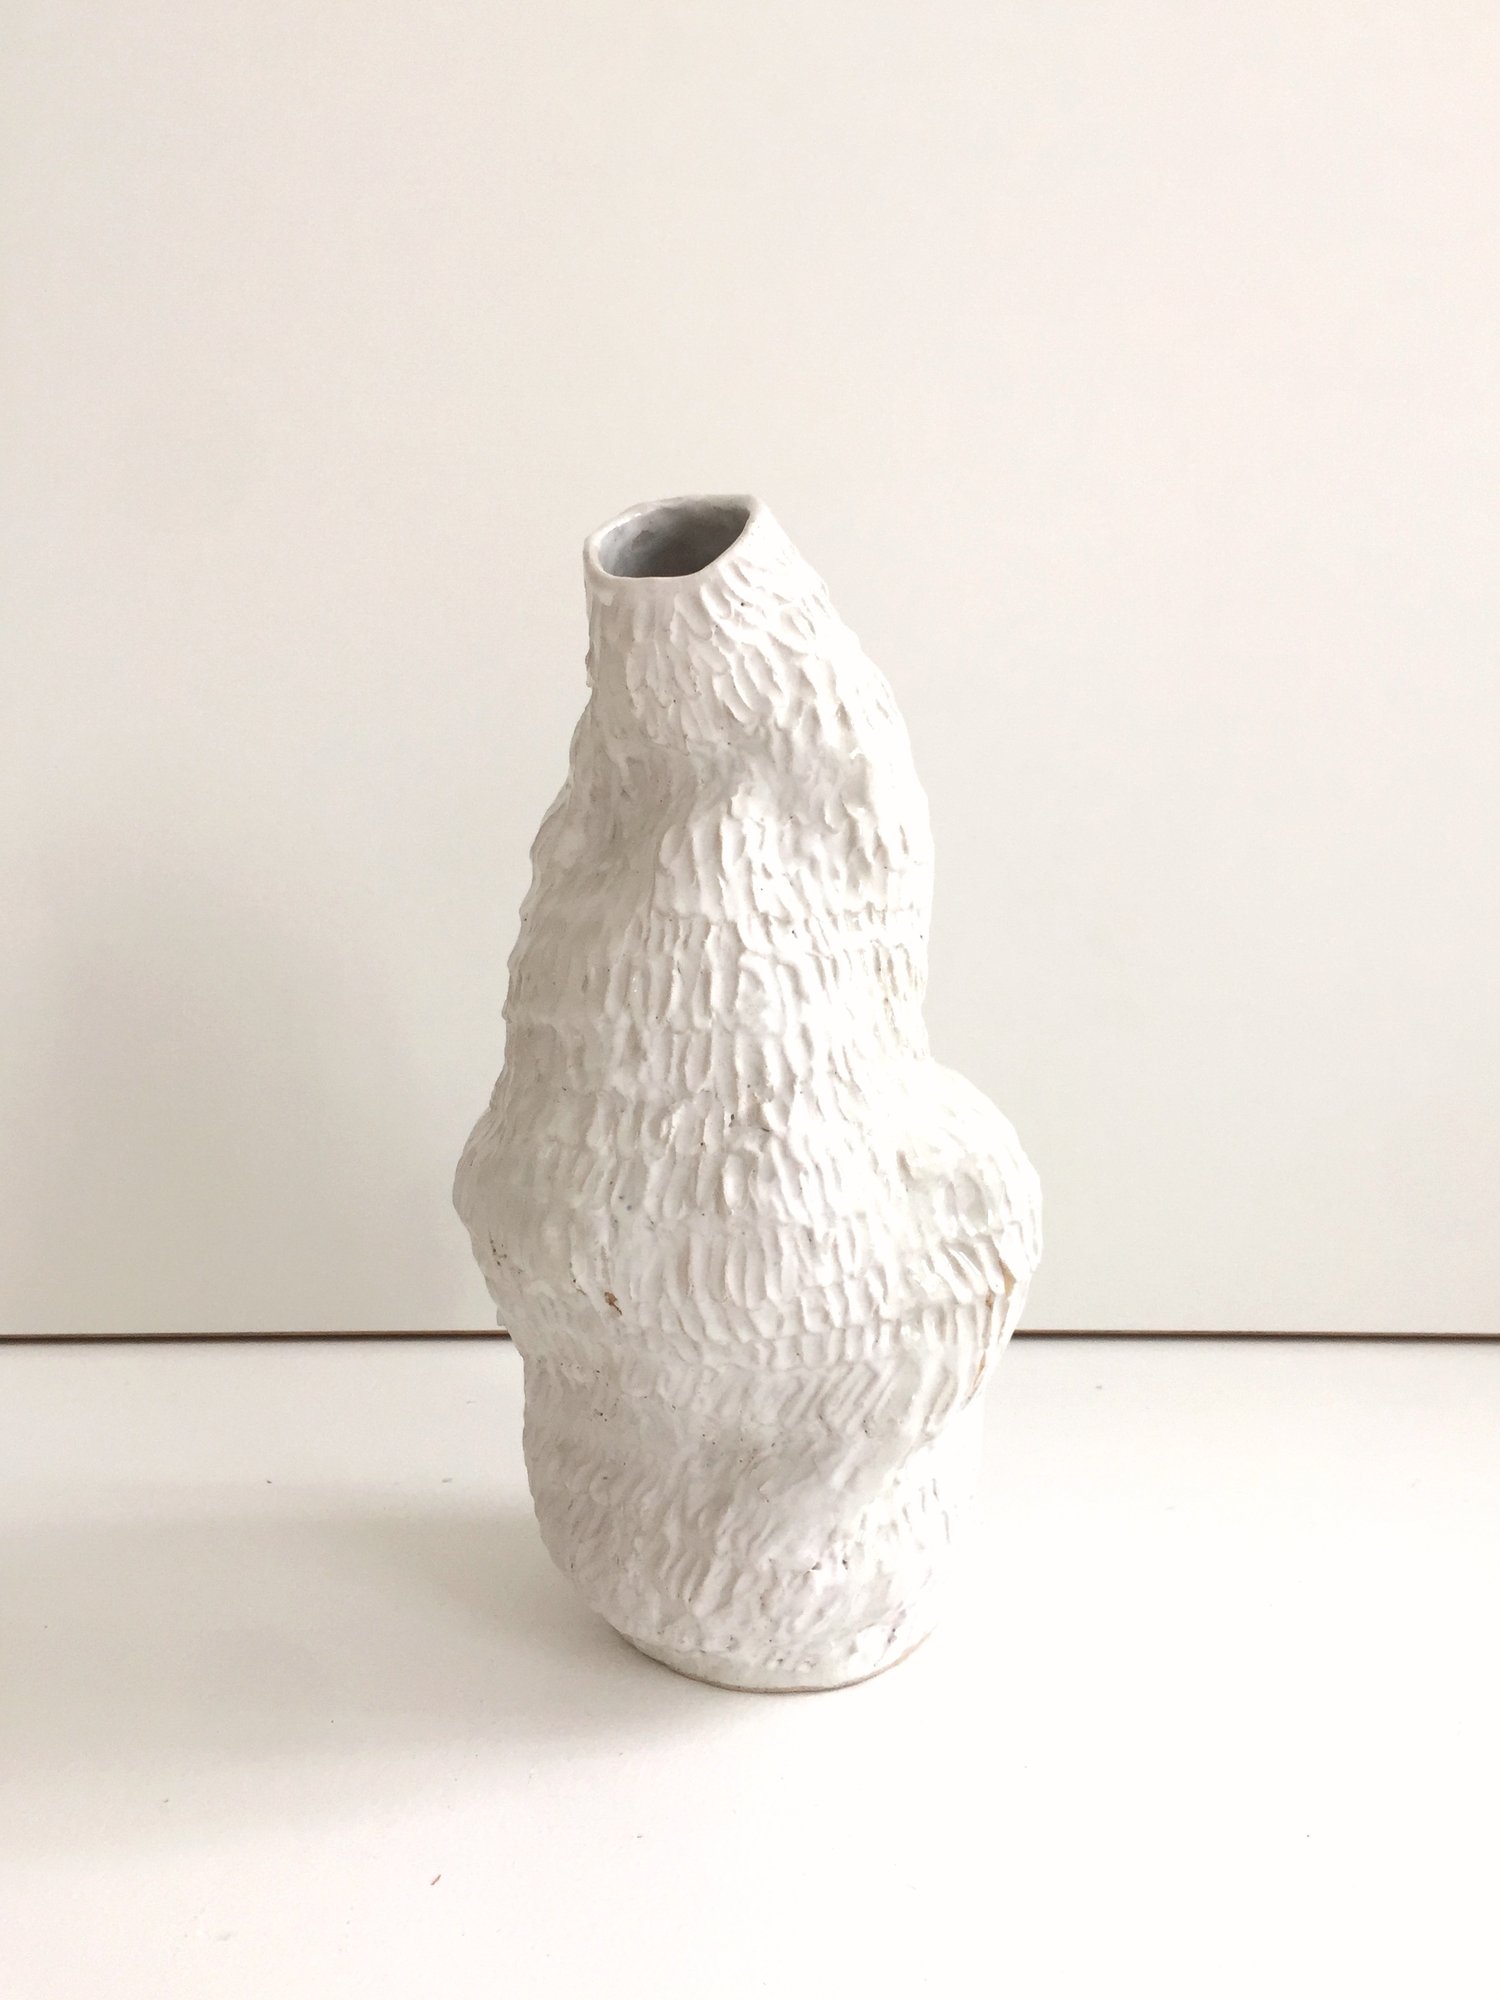 Image of Vase No. 01